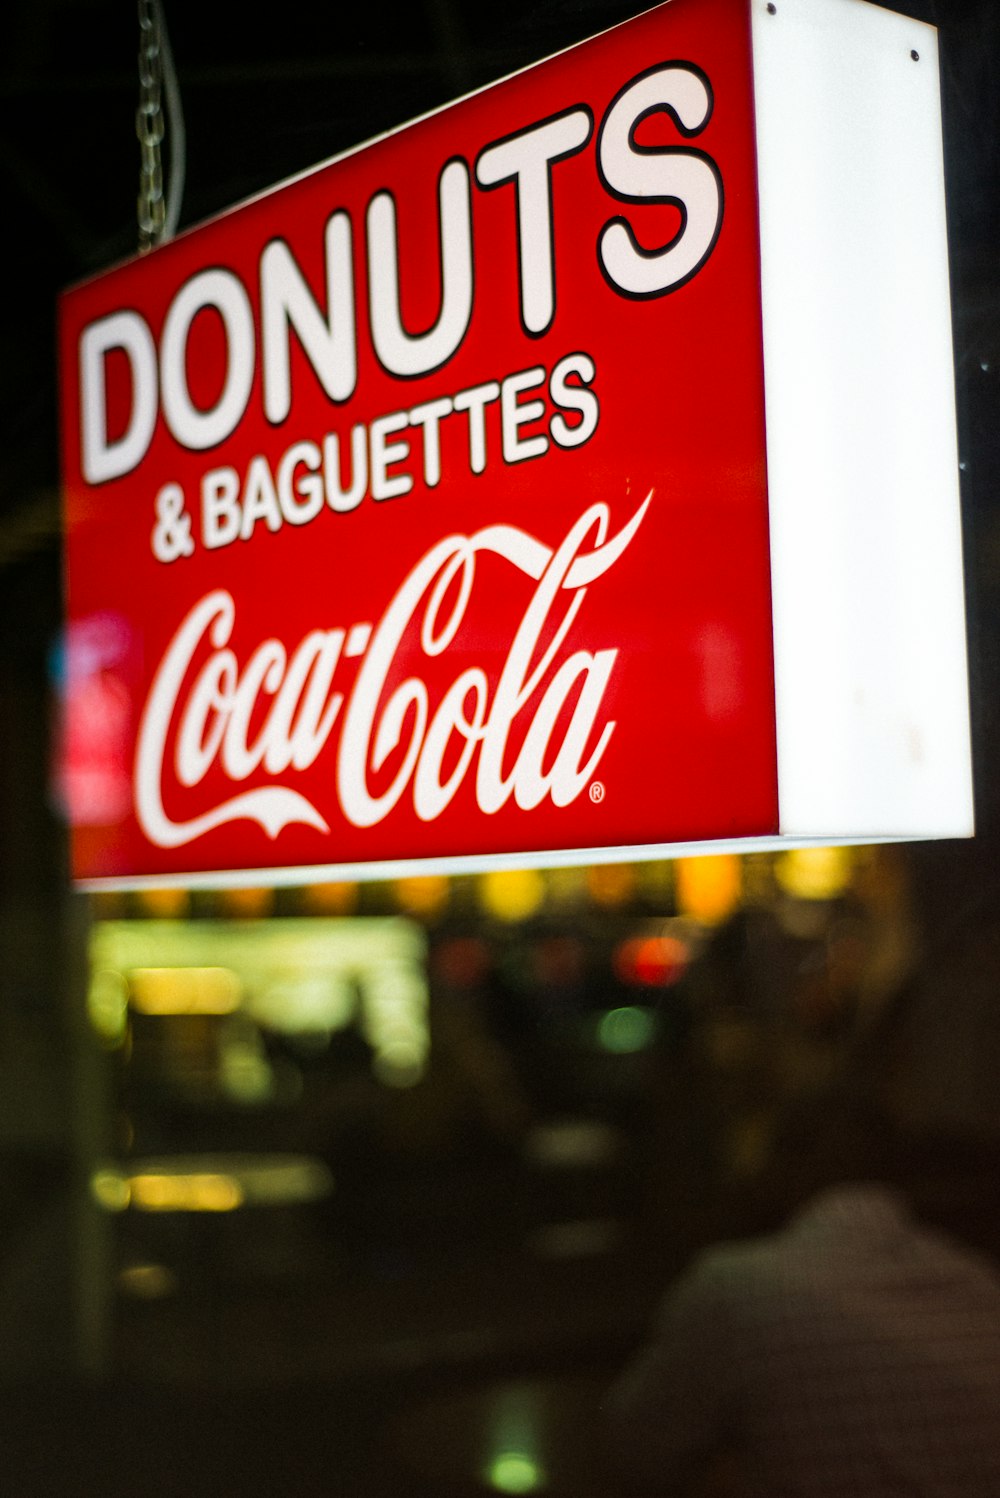 fotografia ravvicinata di Donuts & Baguettes Coca-Cola signage